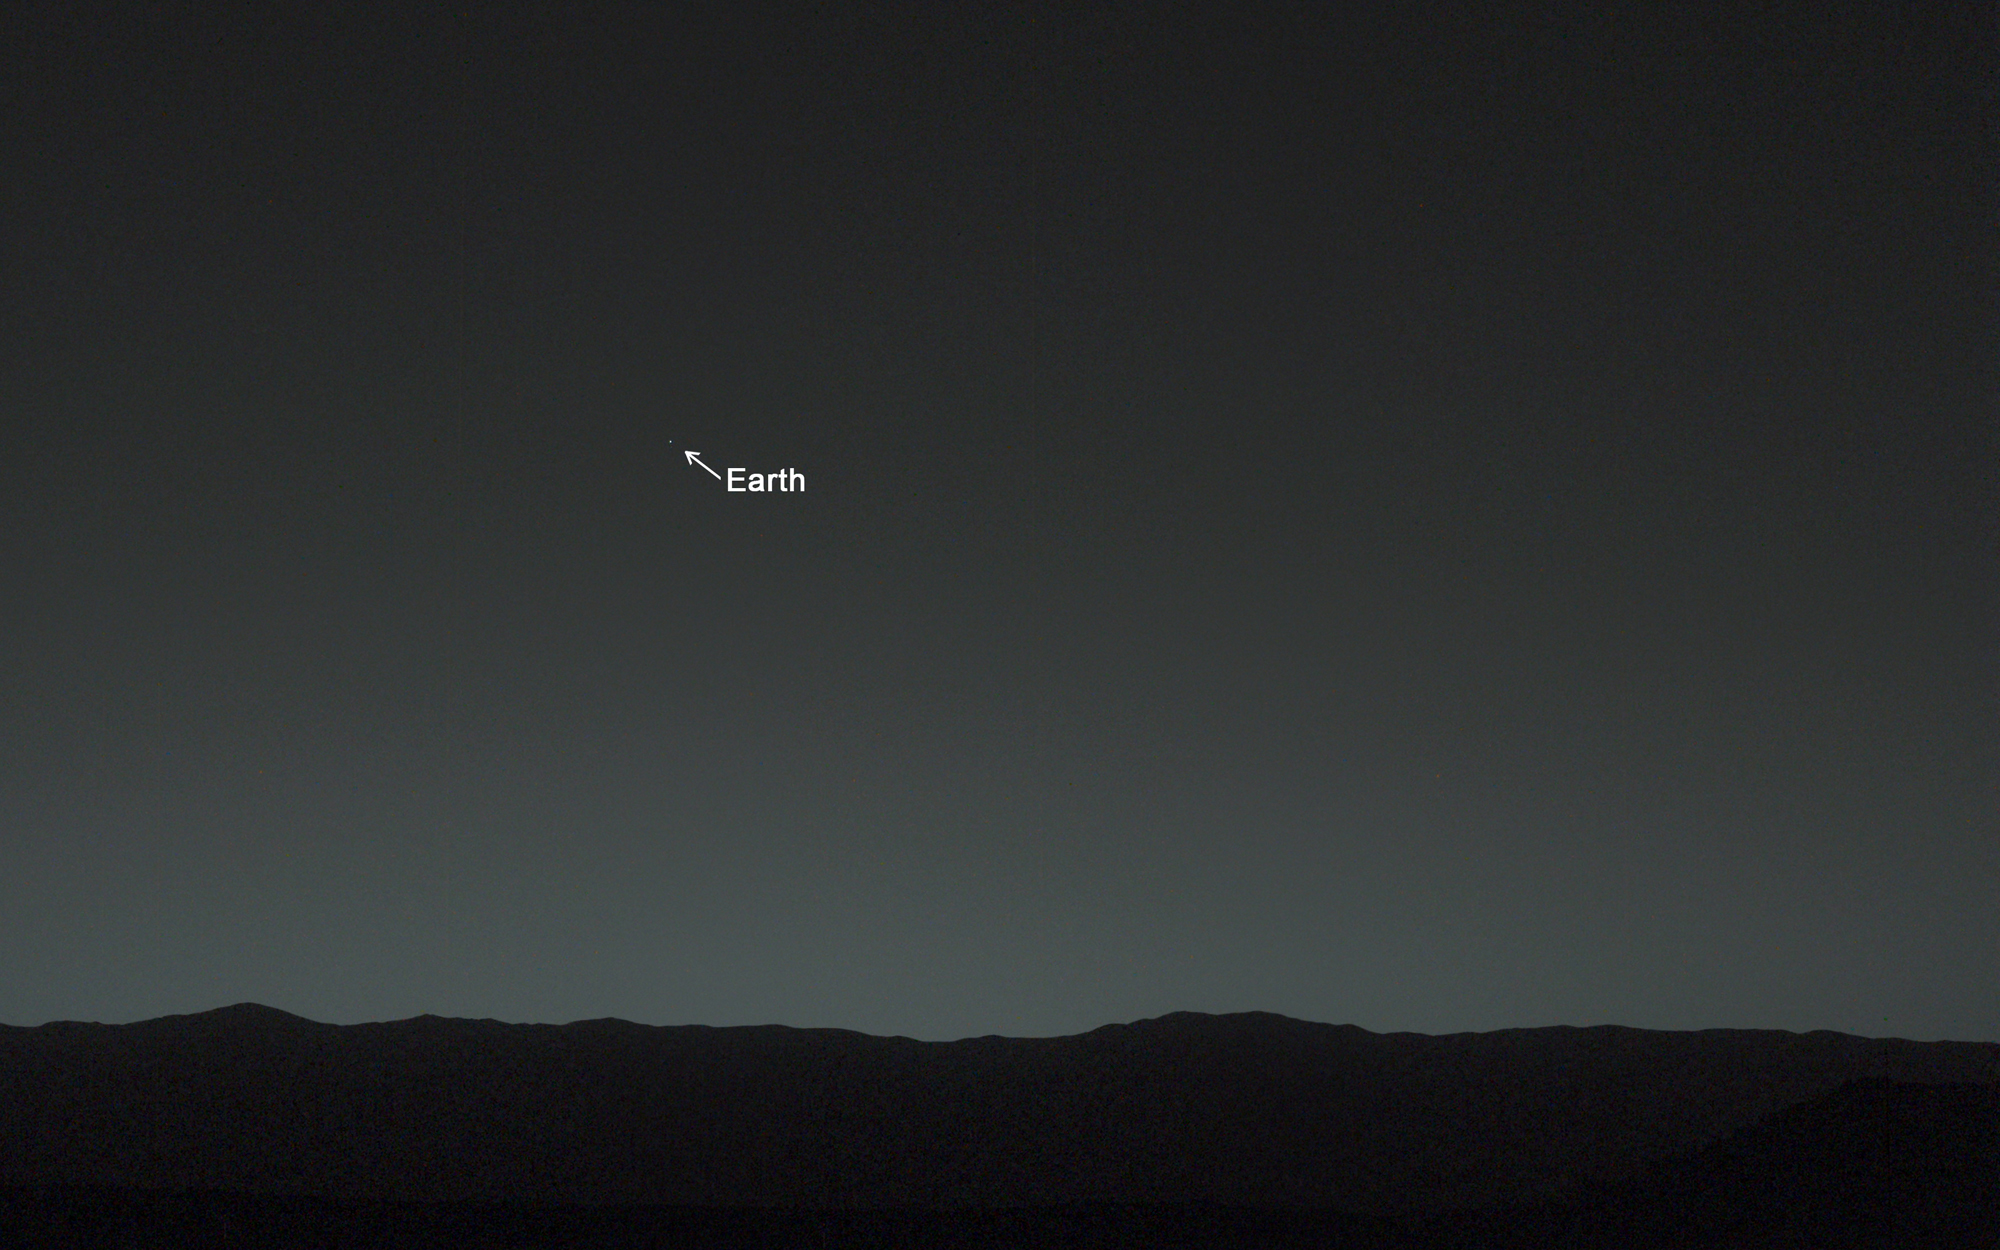 mars-rover-curiosity-earth-photo.jpg?1391719798